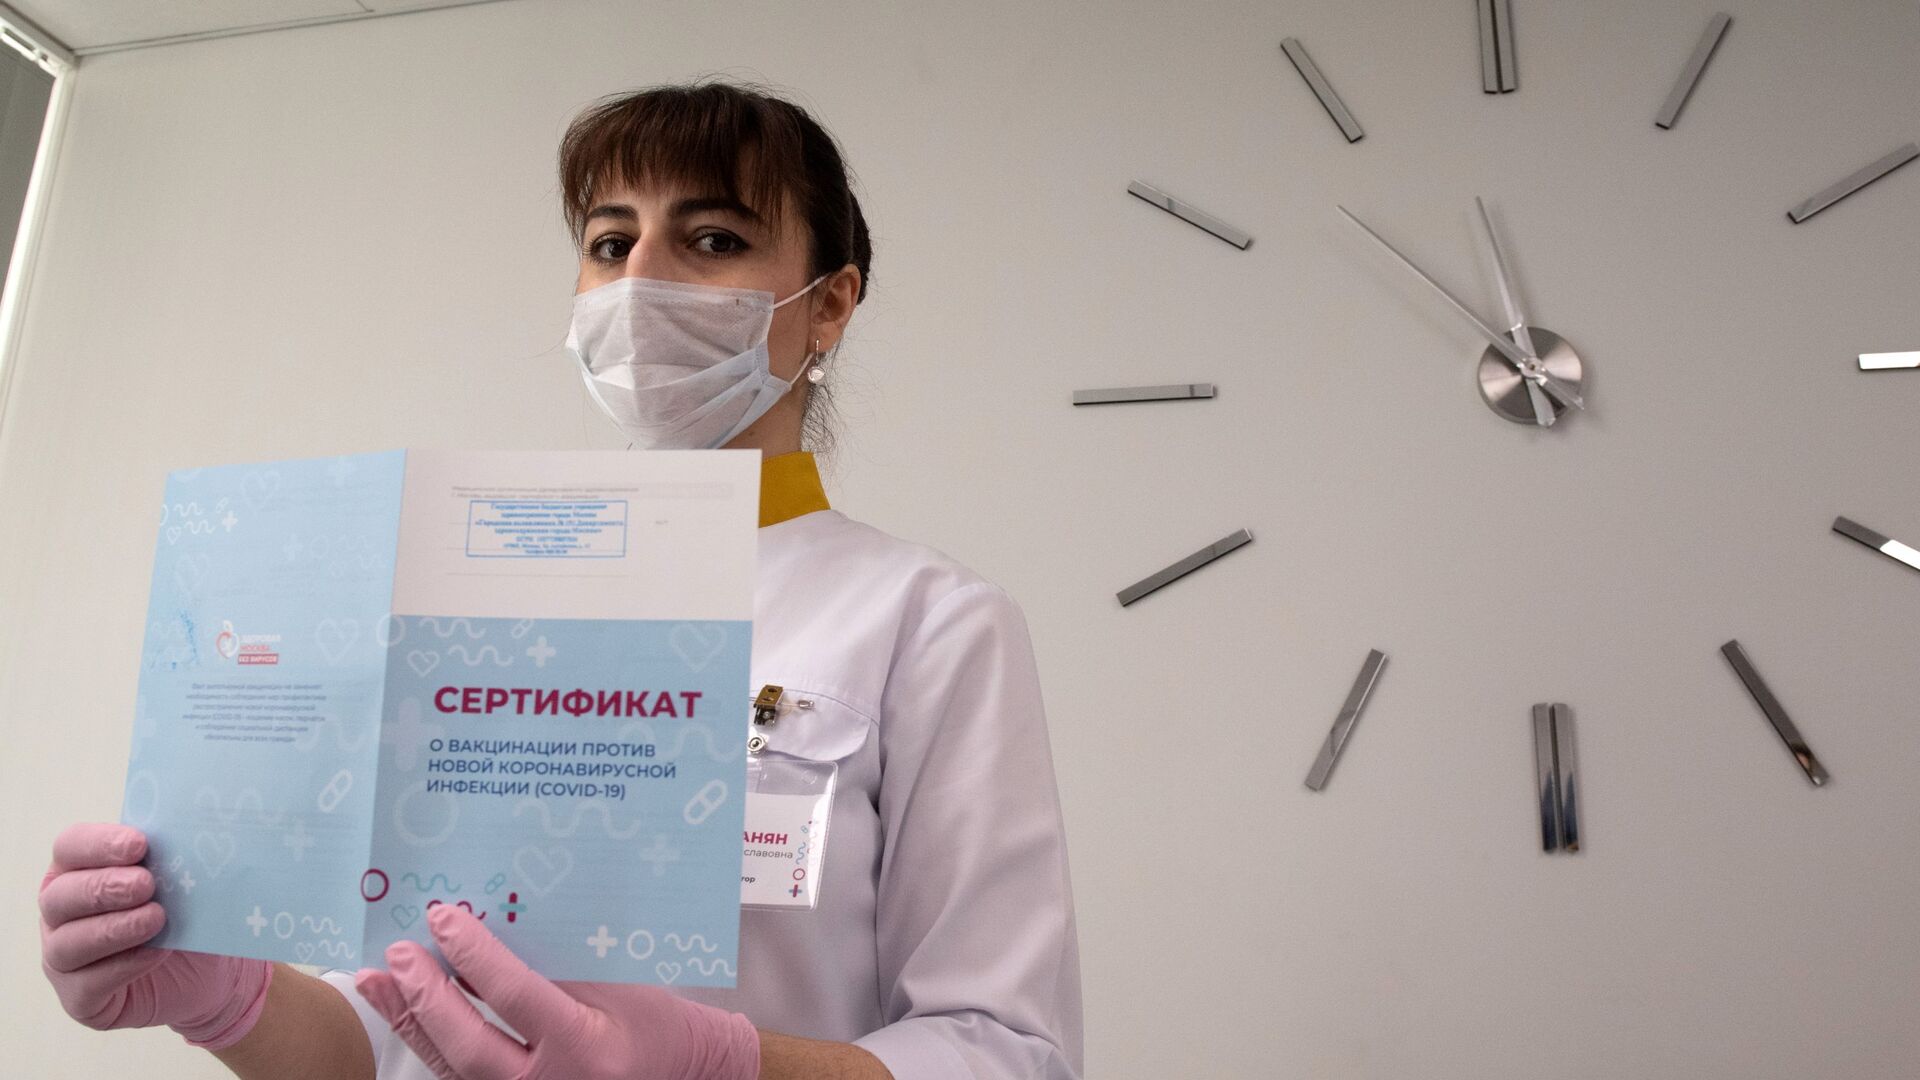 Медработник демонстрирует Сертификат о вакцинации от новой коронавируссной инфекции COVID-19 в Москве - Sputnik Таджикистан, 1920, 28.06.2021